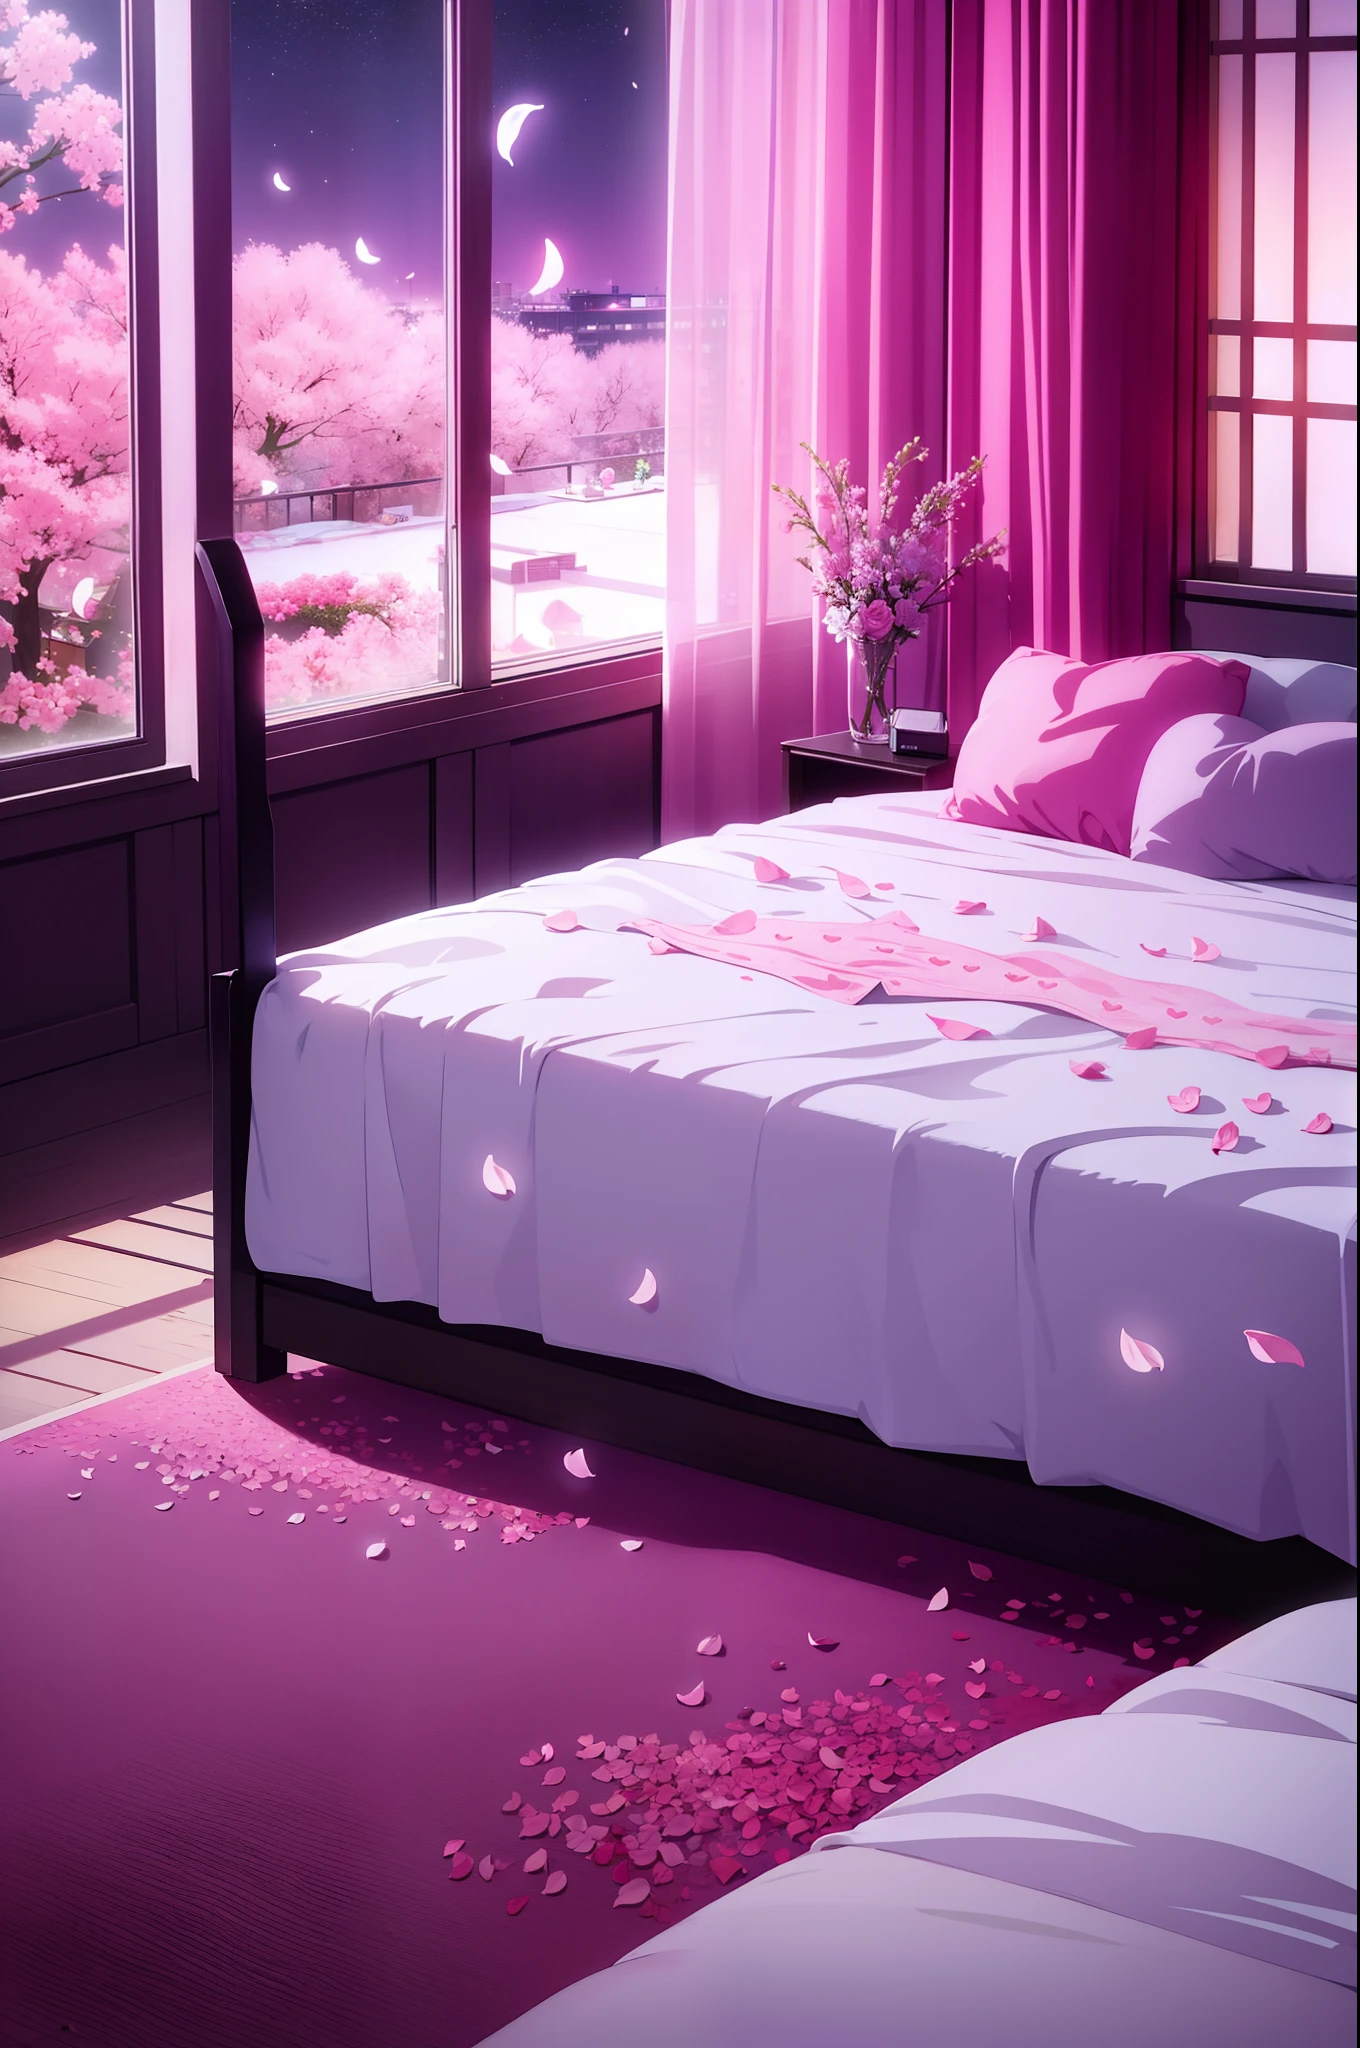 чувственный вид на комнату с разбросанными лепестками цветов на кровати, Кровать в форме сердца, Ночное небо на окнах, розовый свет, отель любви, мешок с презервативом, Мокрая кровать